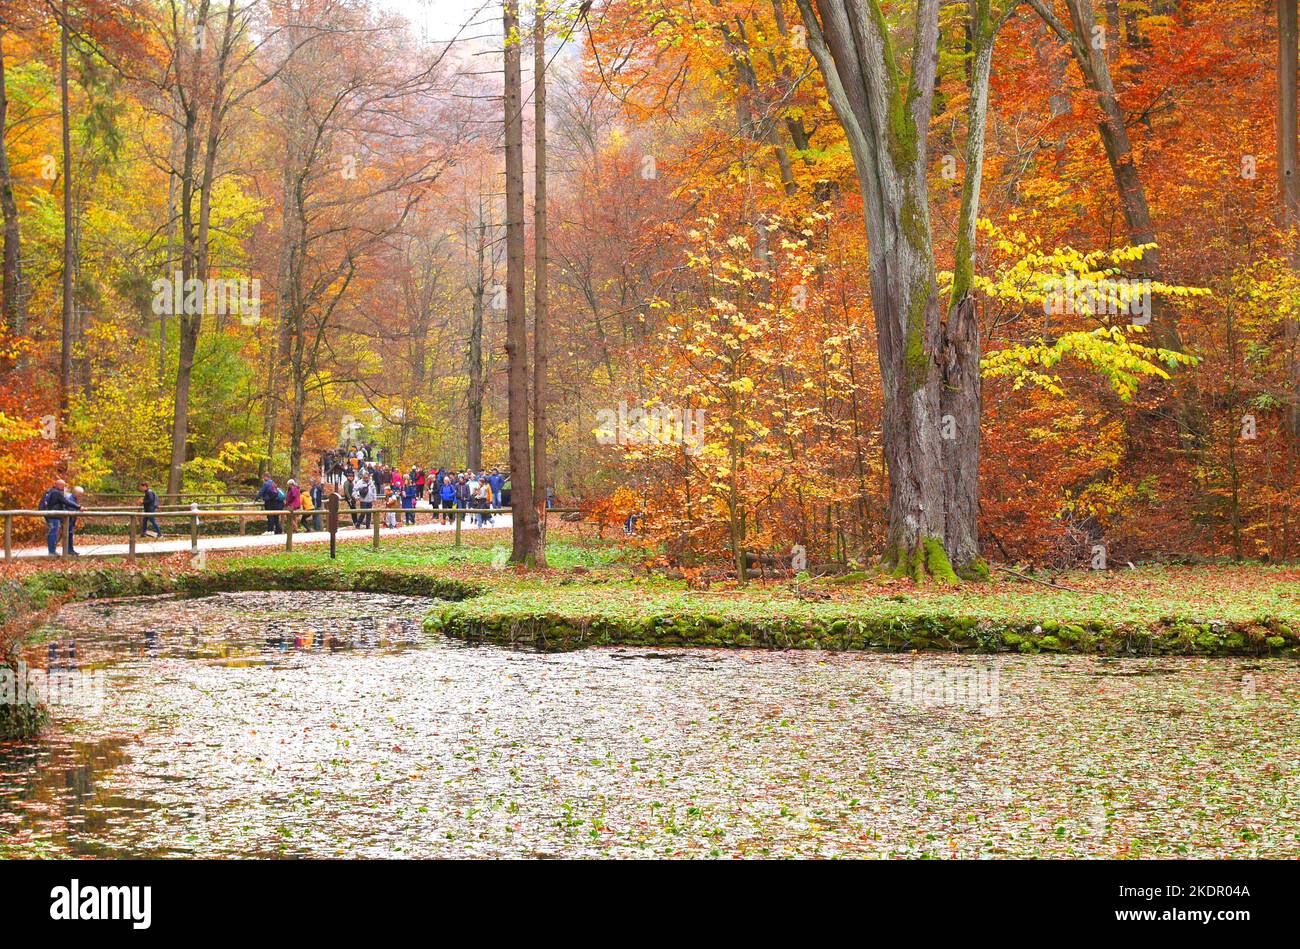 Personnes marchant dans les bois un jour d'automne, vallée de Szalajka, parc national de Bukk, collines de Bukk, Hongrie Banque D'Images